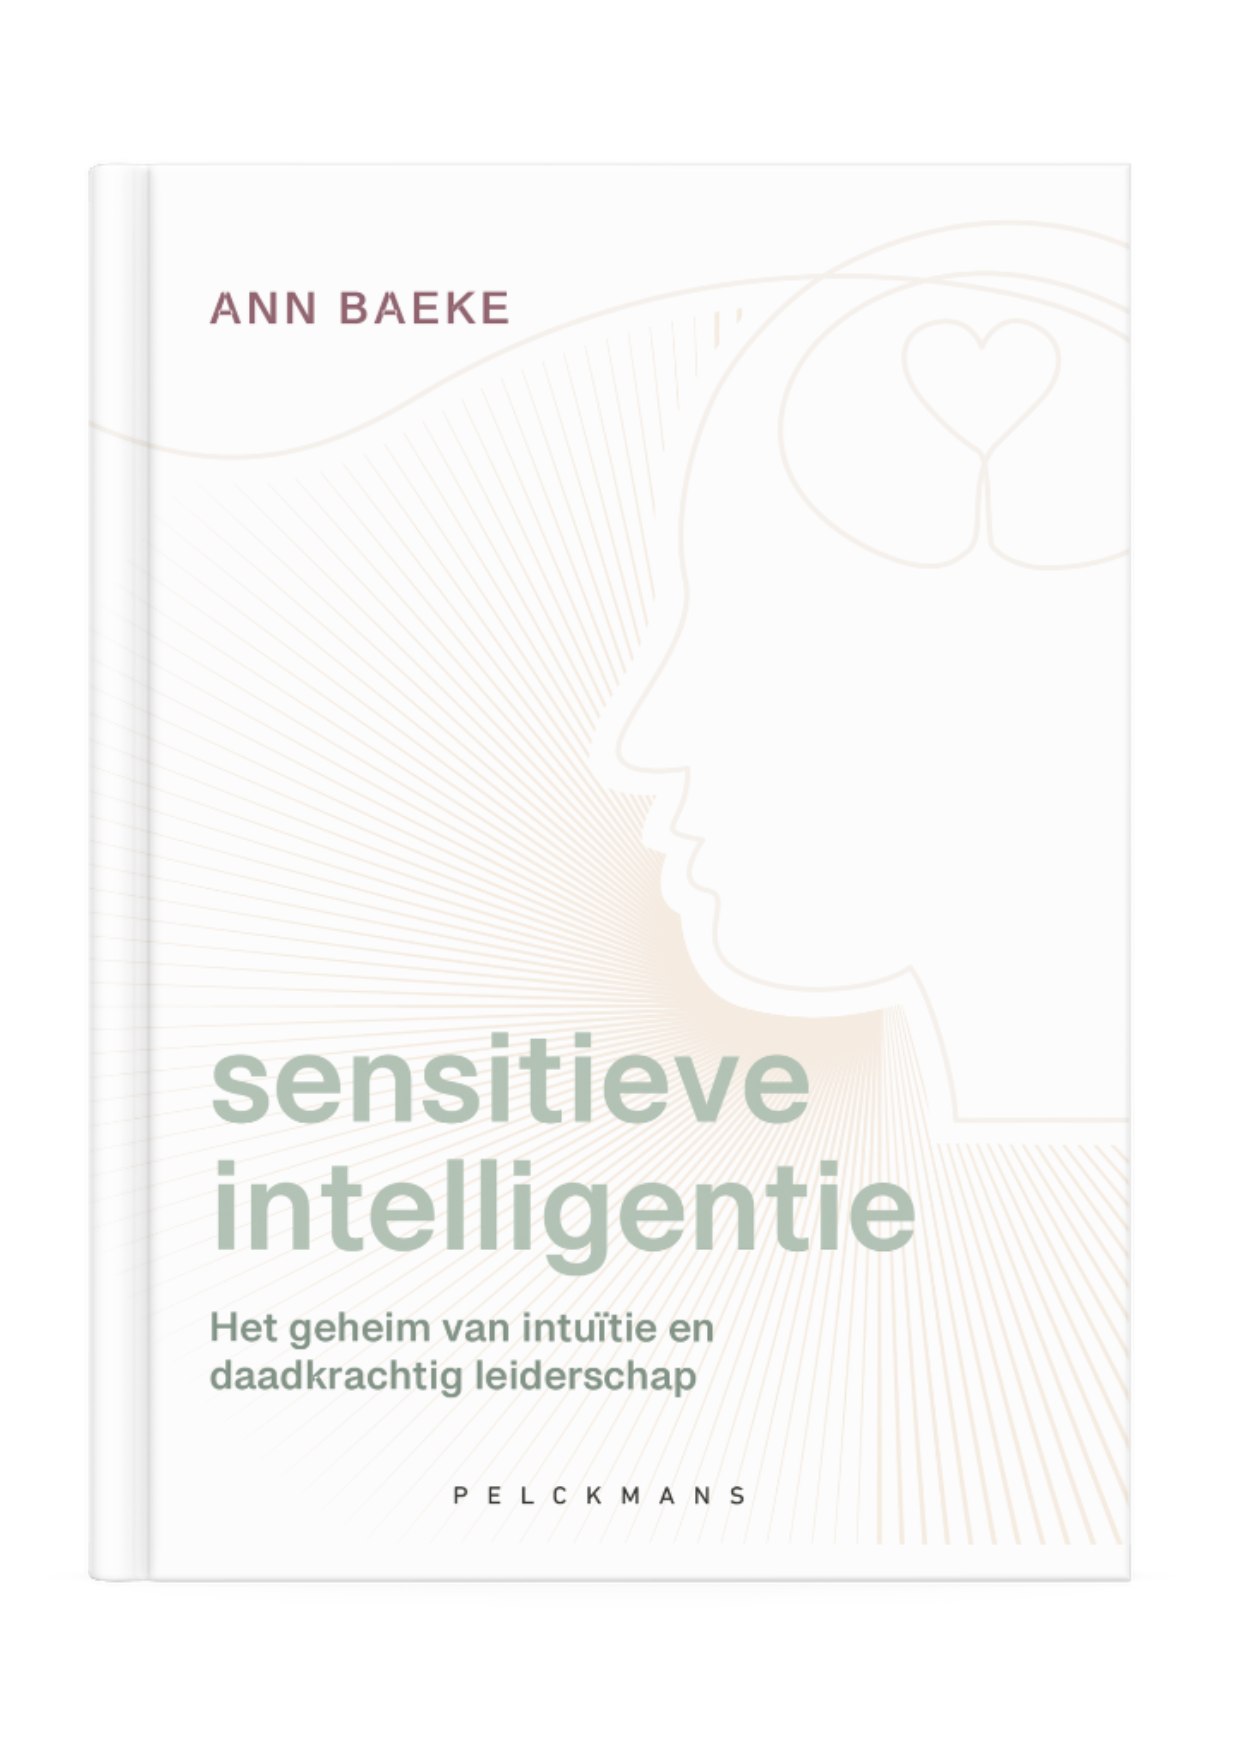 Boek sensitieve intelligentie door Ann Baeke